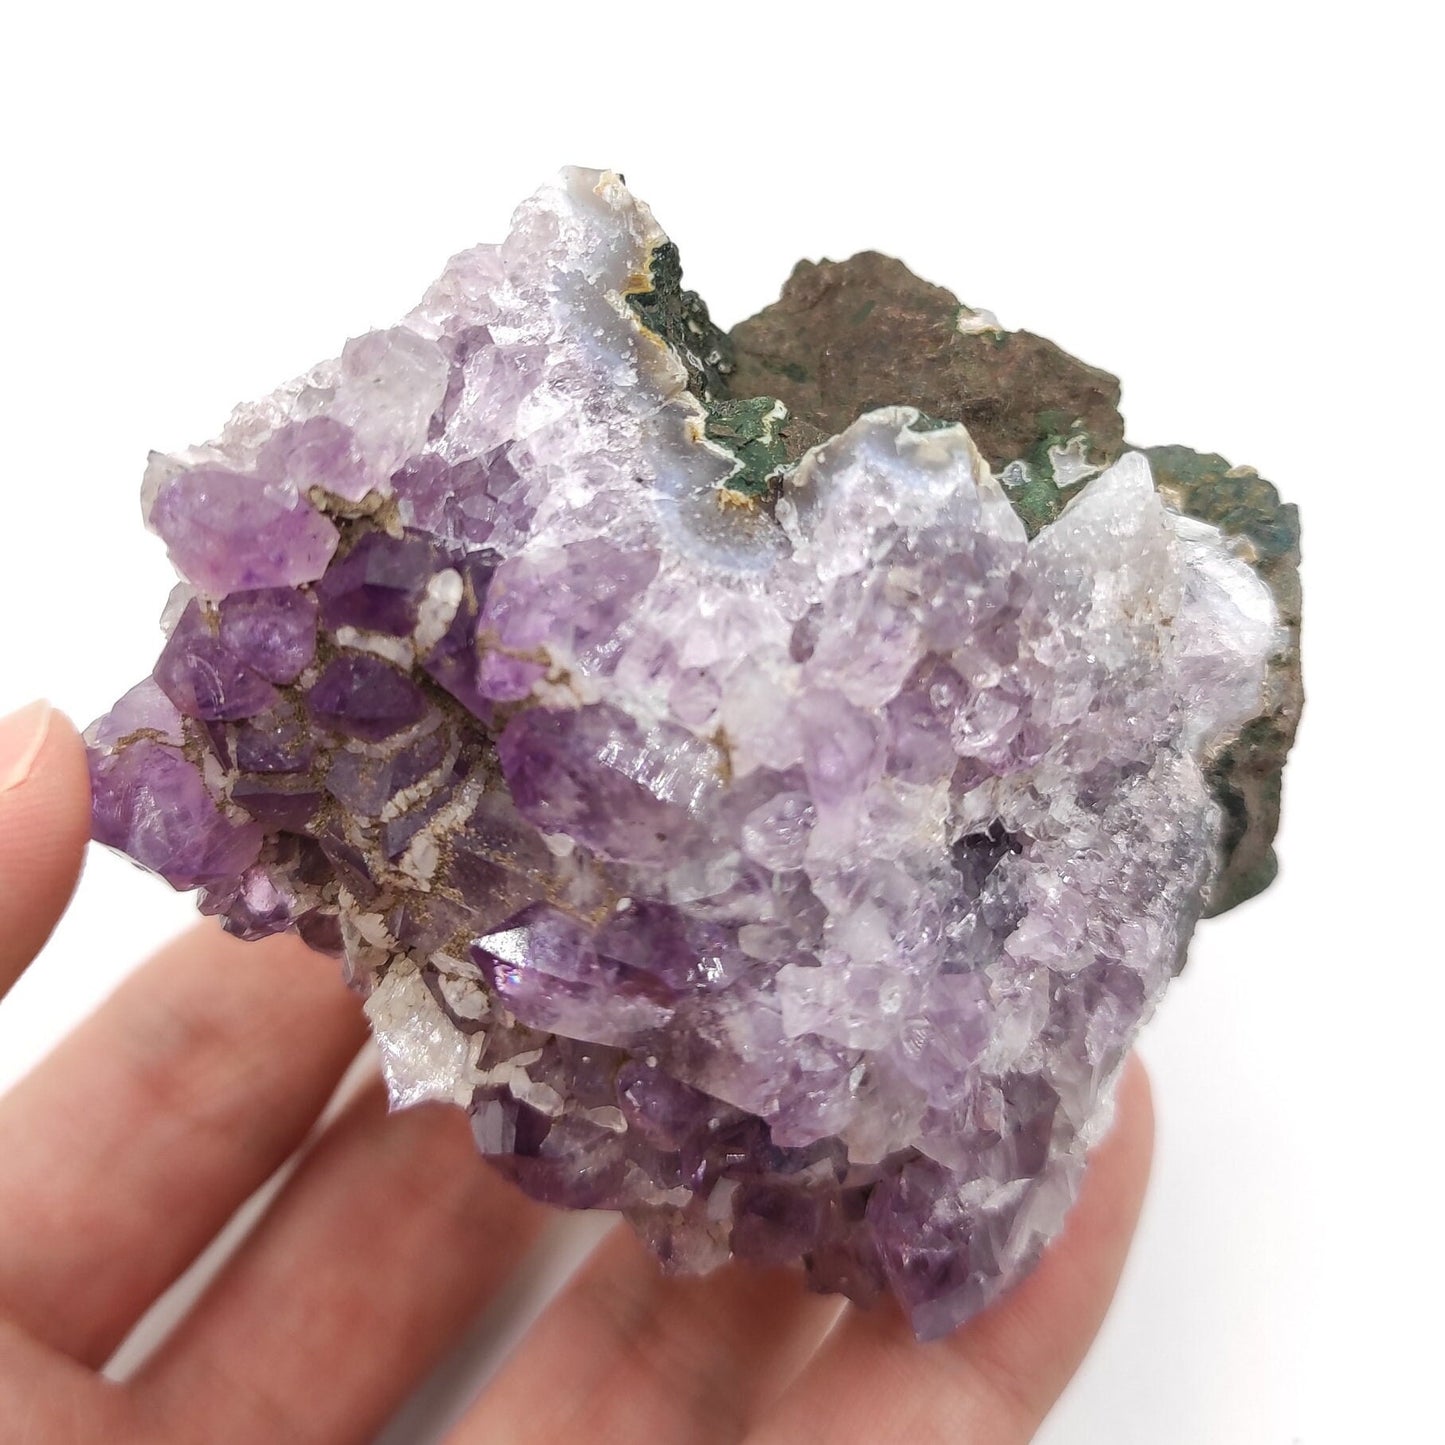 242g Amethyst Crystal Cluster Purple Amethyst from South Brazil Amethyst Gemstone Raw Amethyst Rough Amethyst Desk Crystal Natural Crystals